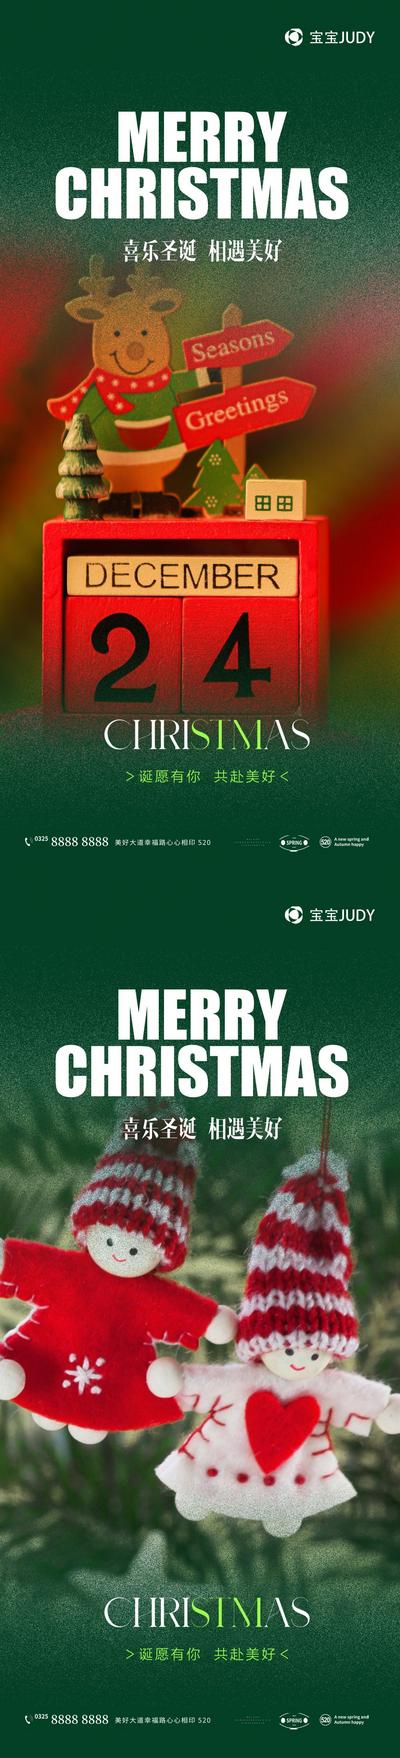 南门网 广告 海报 节日 圣诞节 元素 圣诞 系列 品质